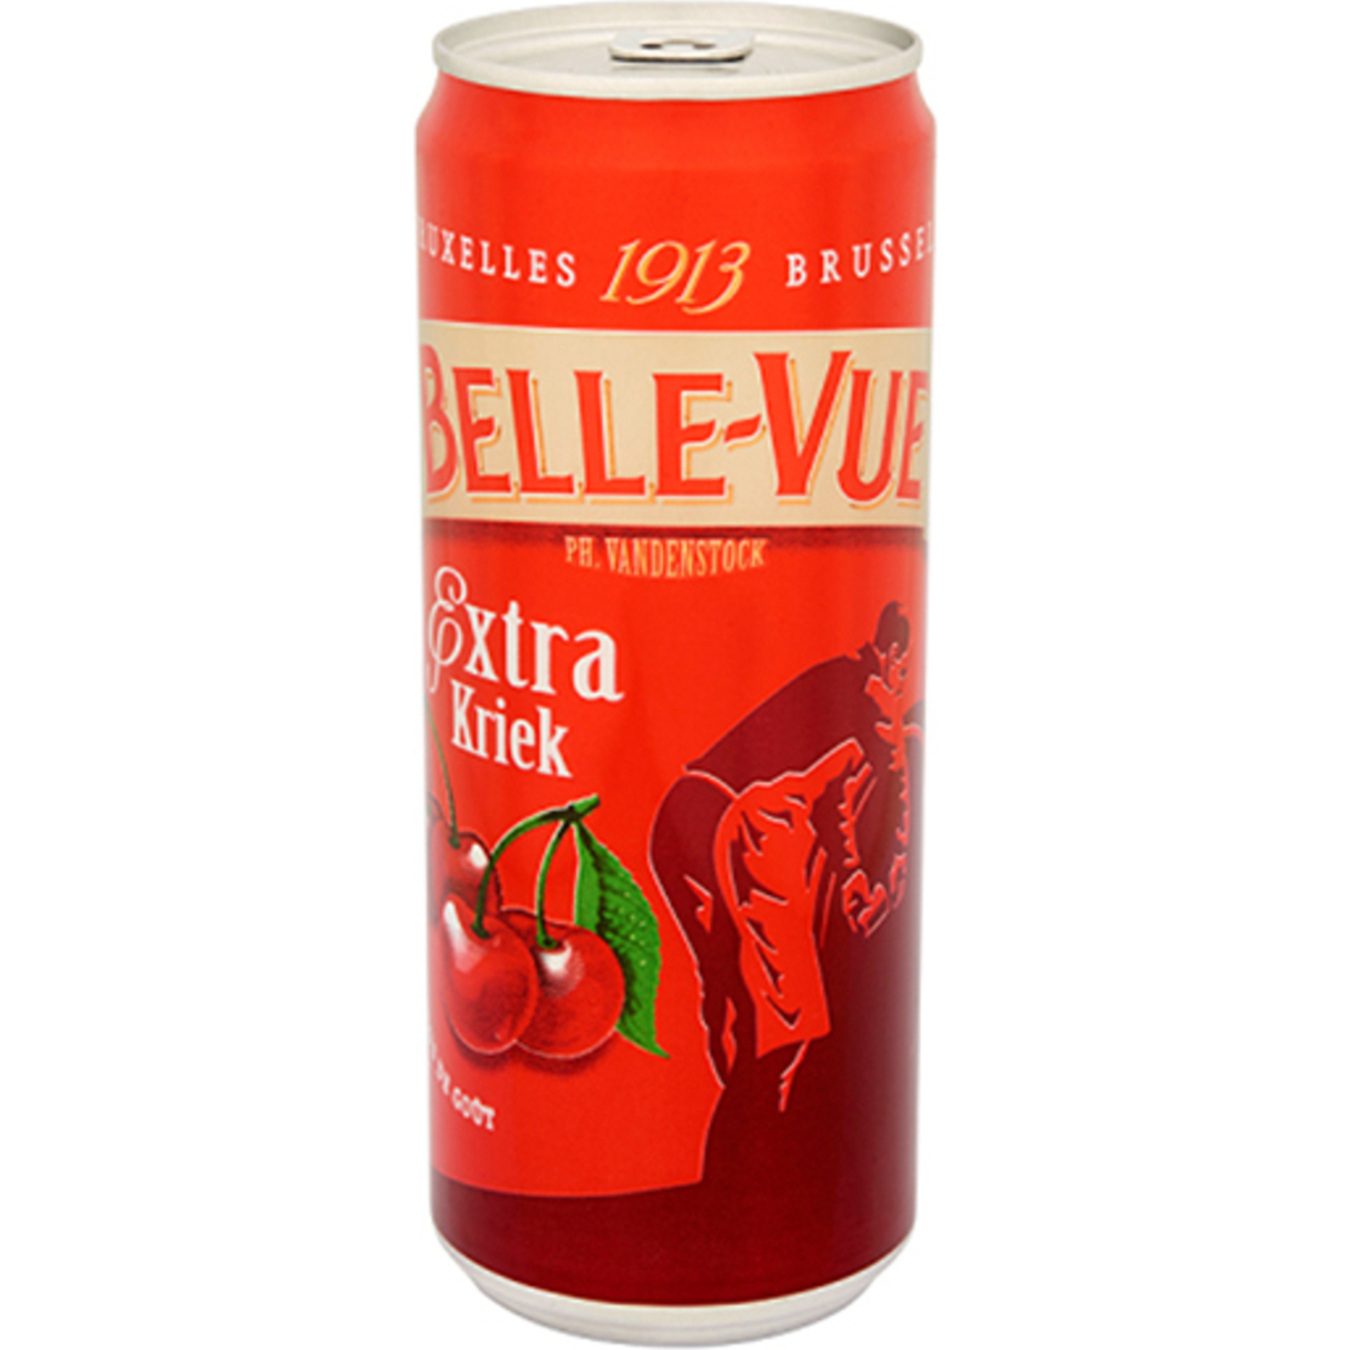 Пиво Belle-Vue Extra Kriek напівтемне спеціальне 4,1% з/б 0,33л